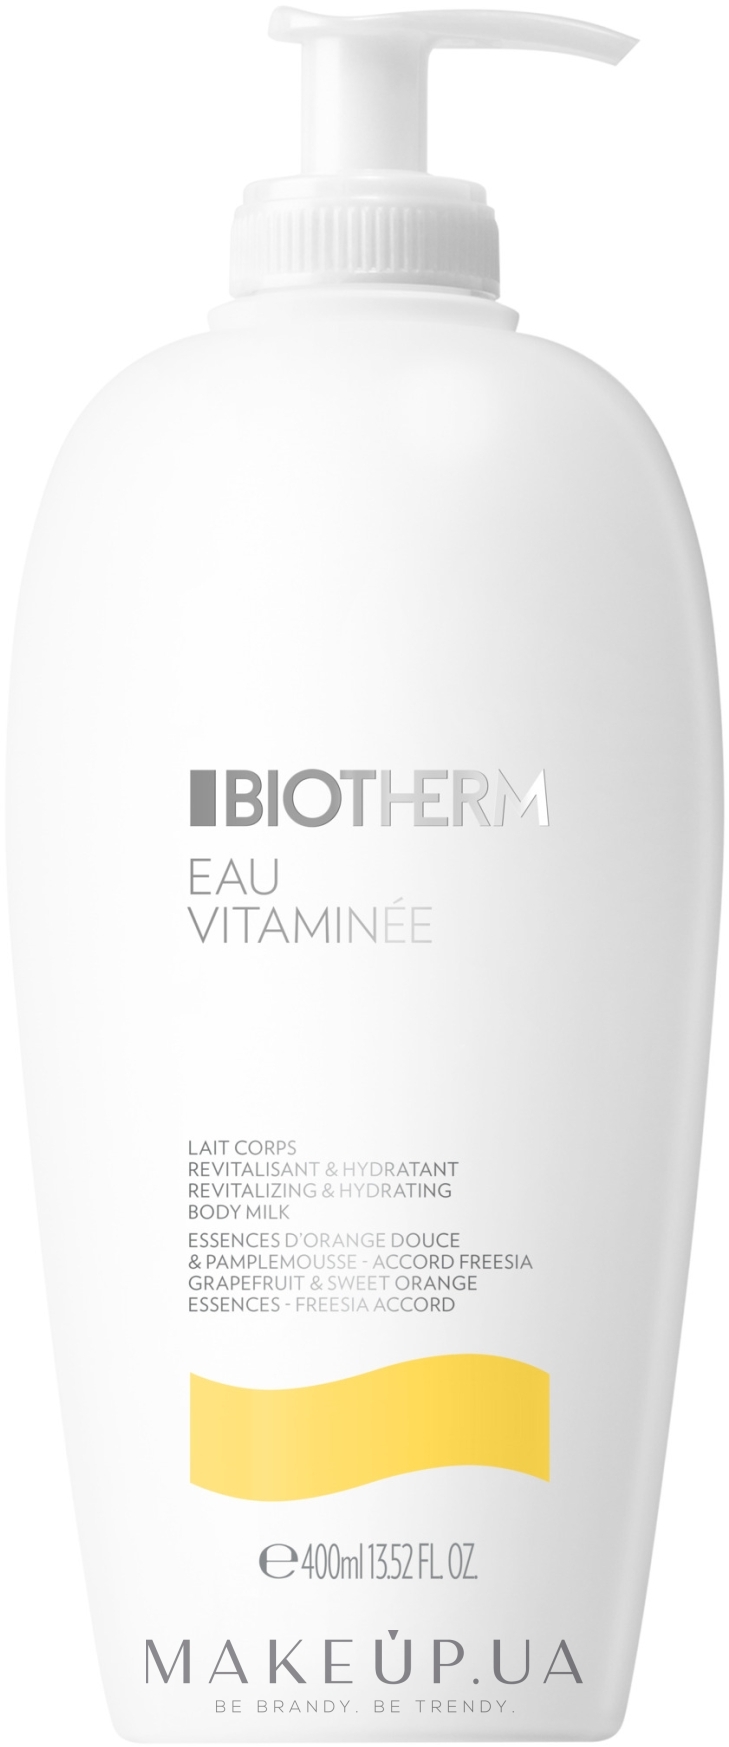 Зволожувальне молочко для тіла - Biotherm Eau Vitaminee Revitalizing & Hydrating Body Milk — фото 400ml